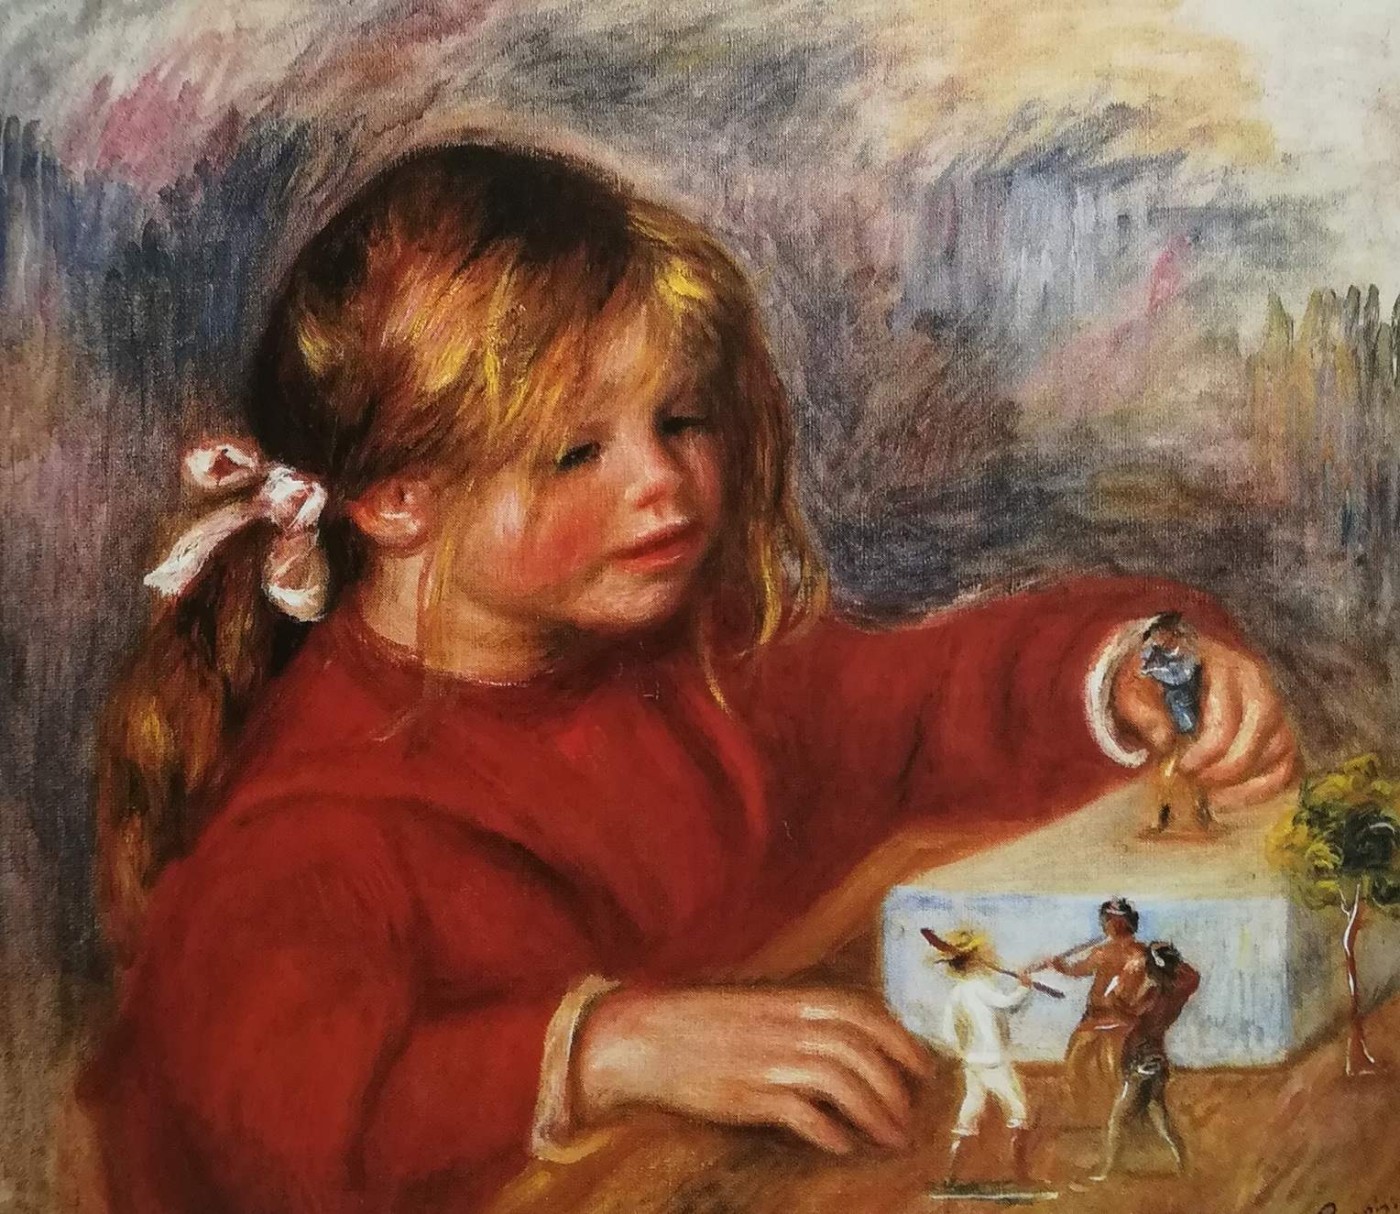 Coco mentre gioca - Renoir, 1905